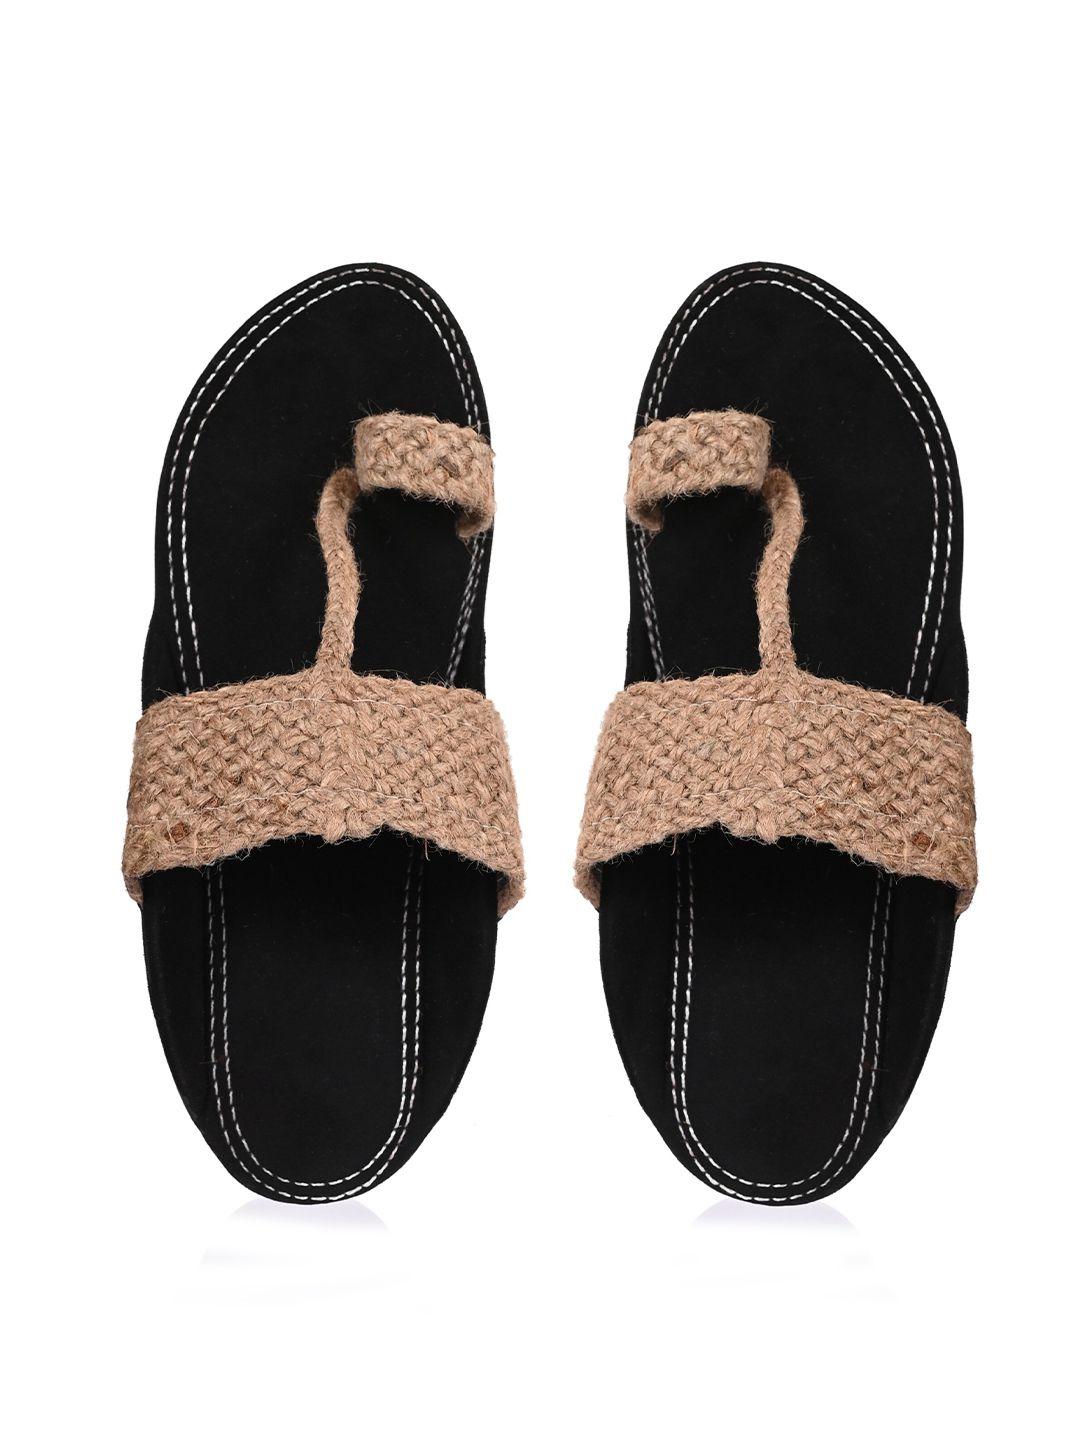 aristitch-men-cream-coloured-&-black-comfort-slippers